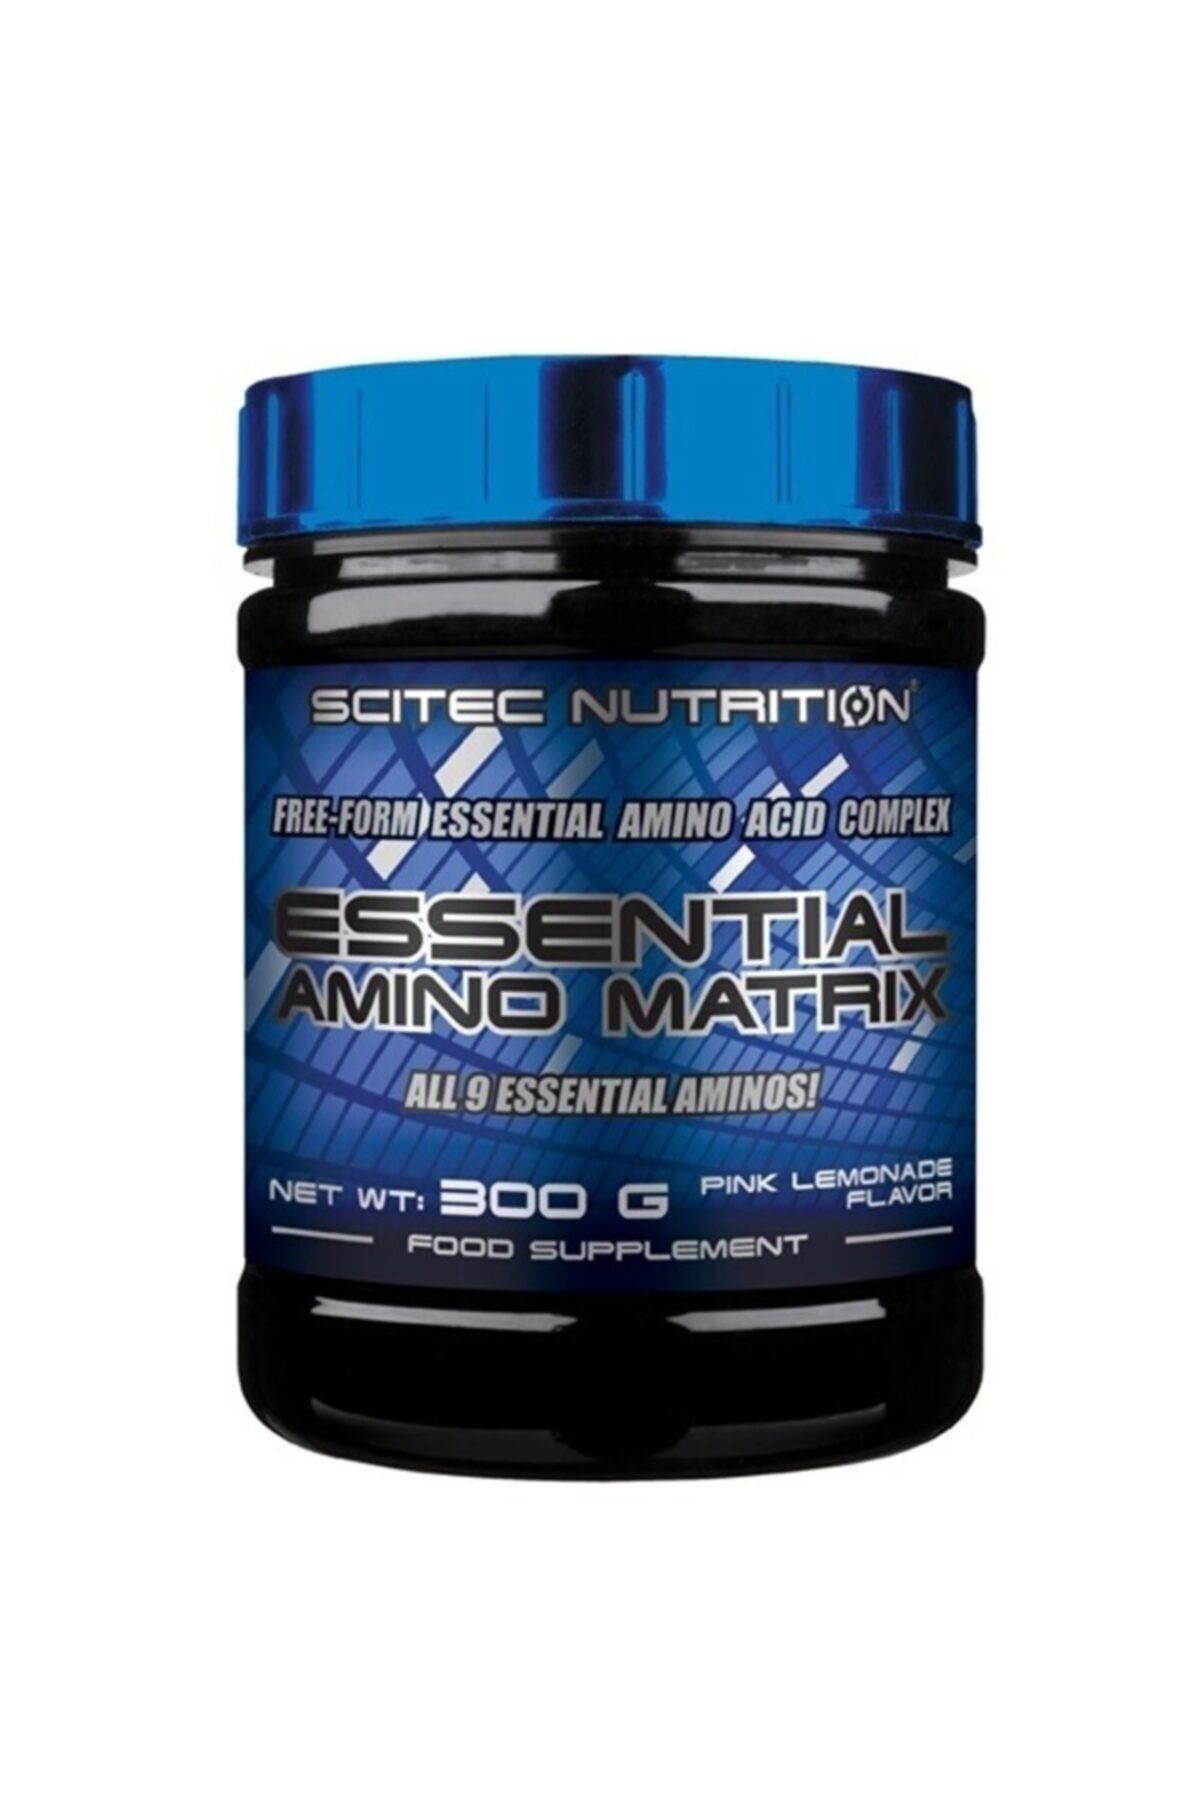 Scitec Nutrition Essential Amino Matrix 300 Gr